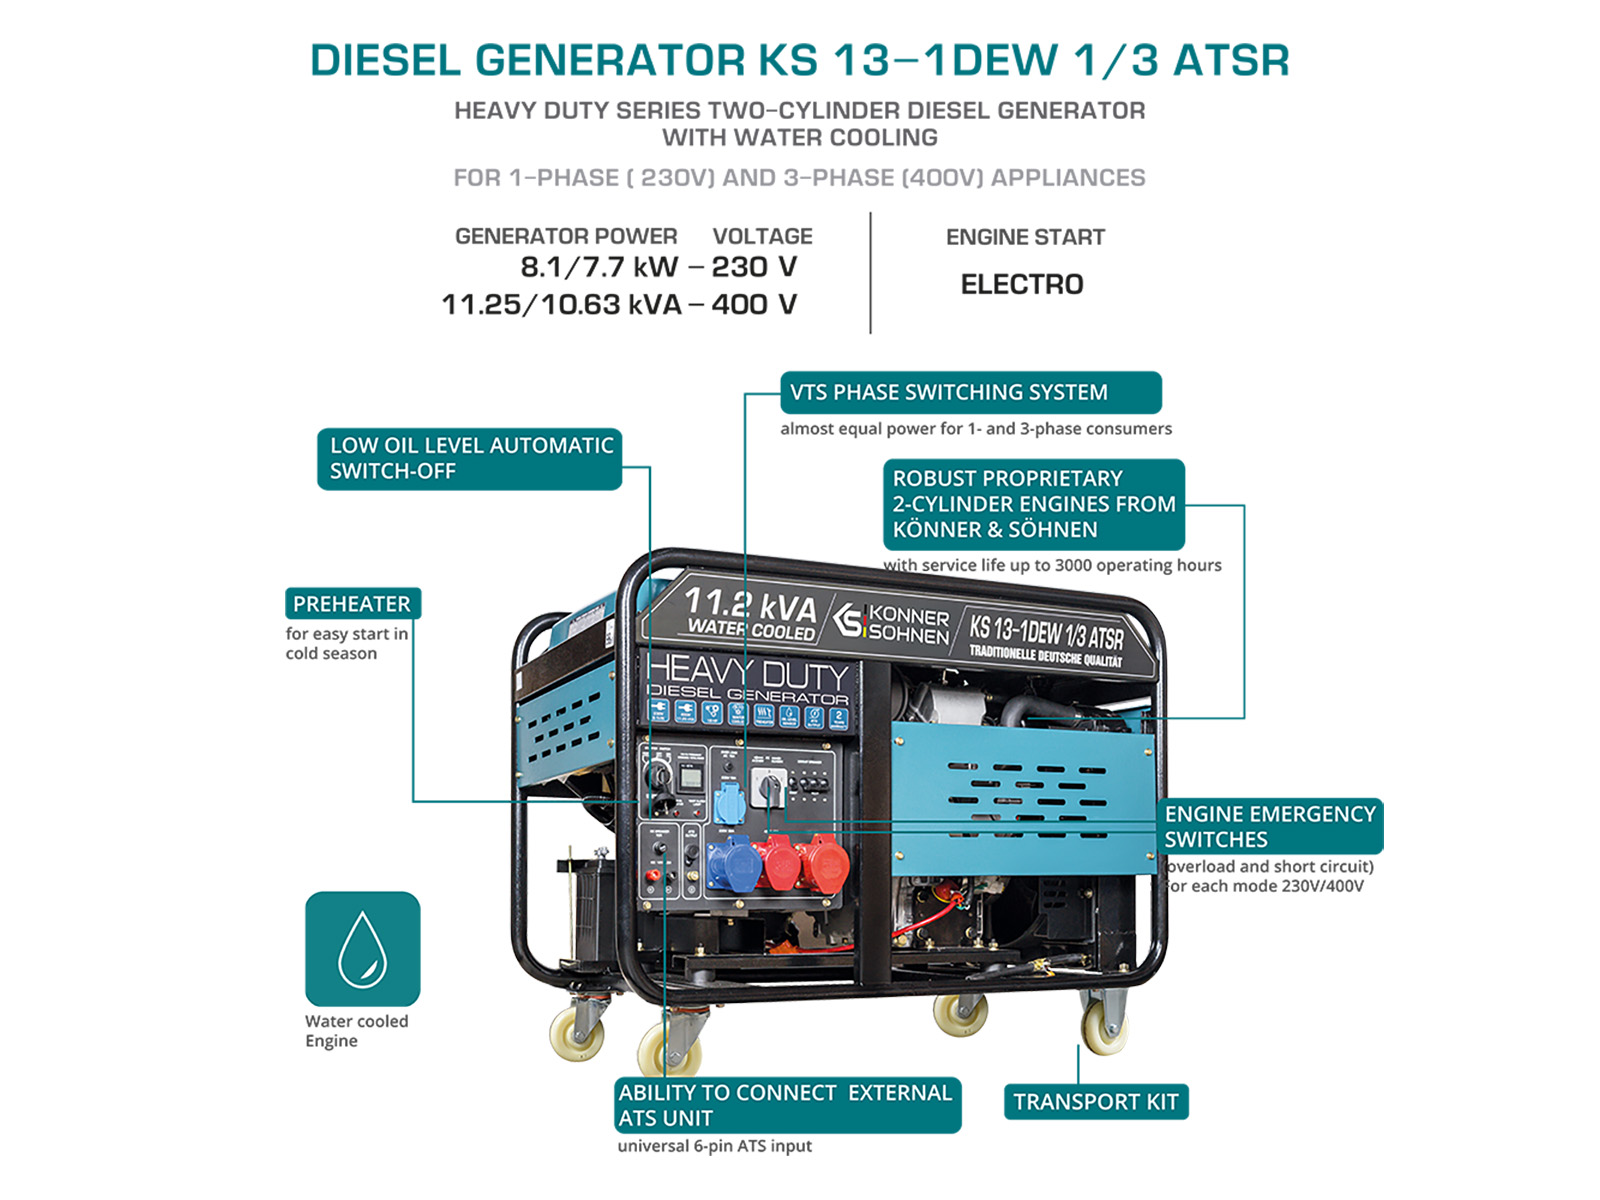 Diesel generator "Könner & Söhnen" KS 13-1DEW 1/3 ATSR